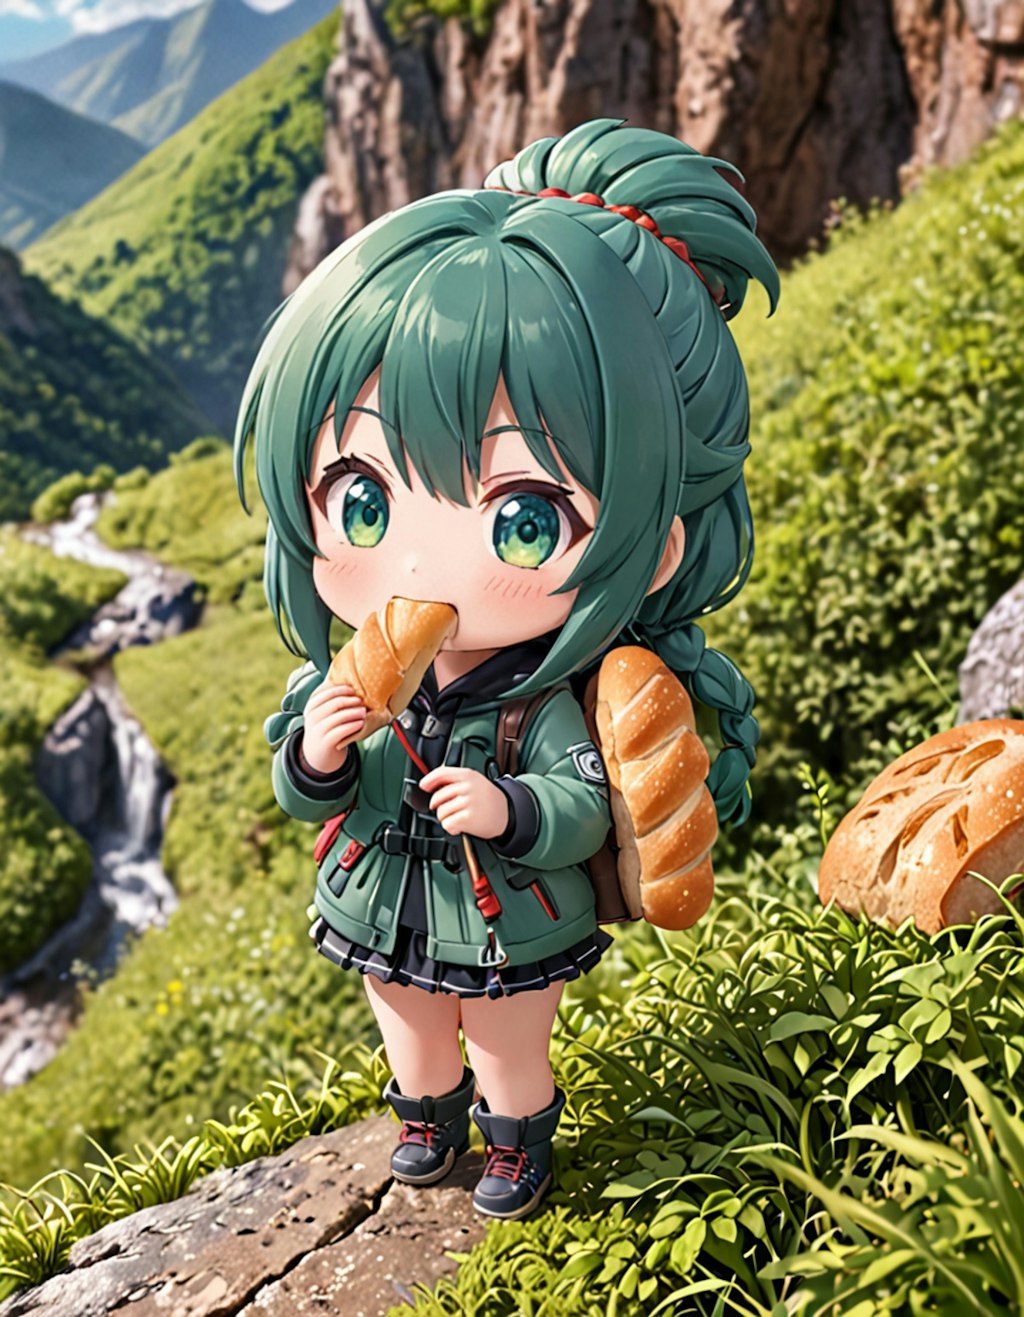 ハイキングでパンを食べる少女〜没にしたけどいい画像だから載せます